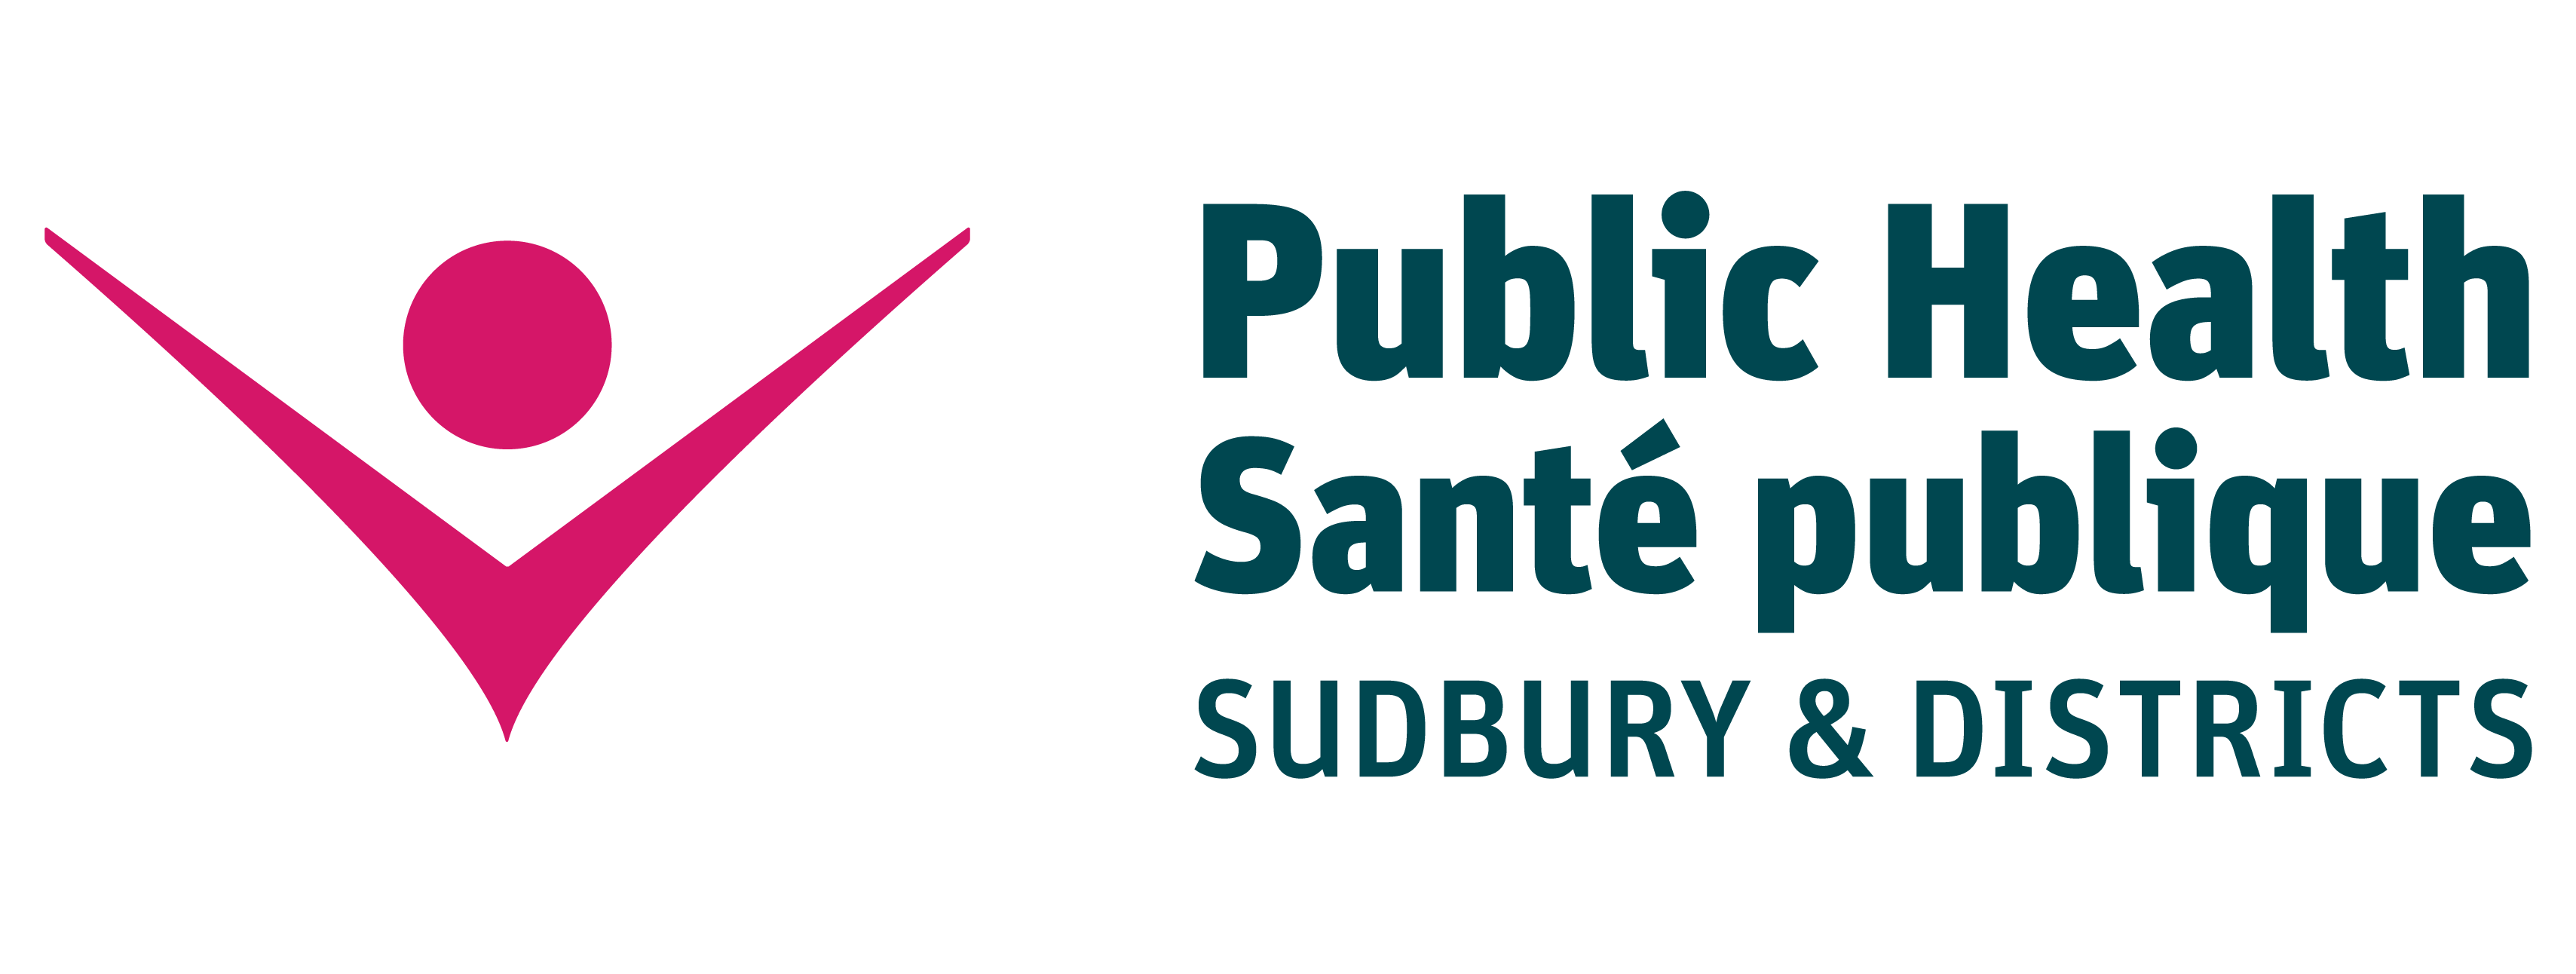 Public Health Sudbury & Districts (Santé publique Sudbury et districts)